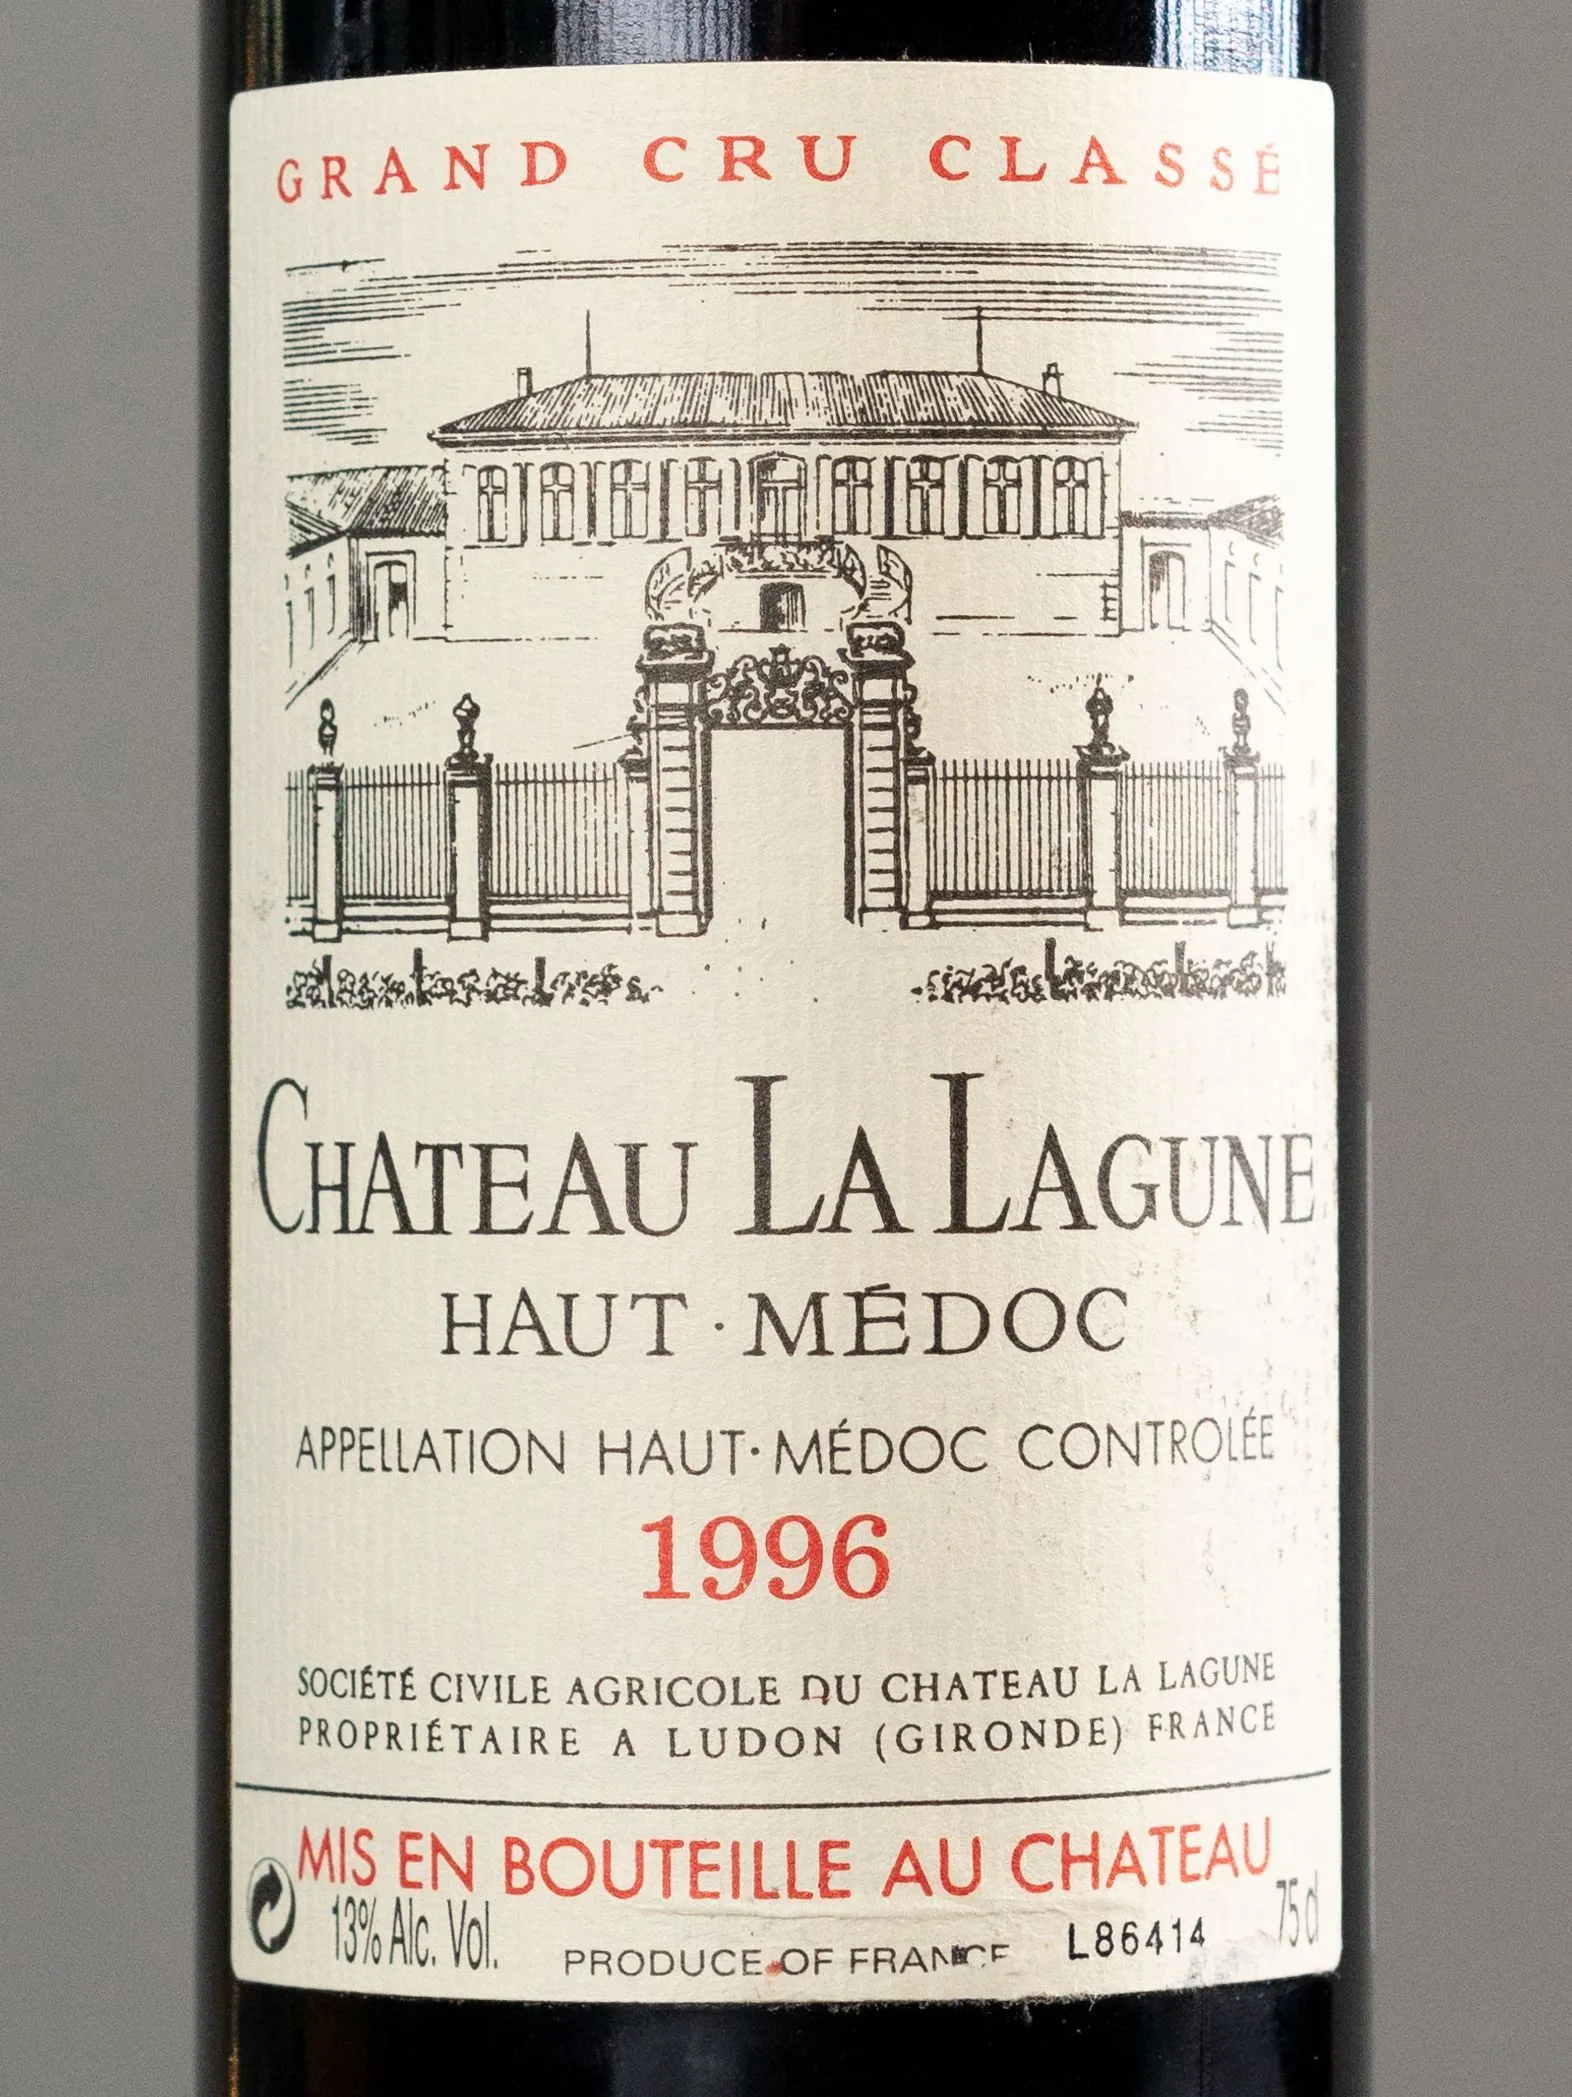 Вино Chateau La Lagune Haut-Medoc AOC 3-eme Grand Cru Classe 1996 / О-Медок Шато Ля Лагюн 1996